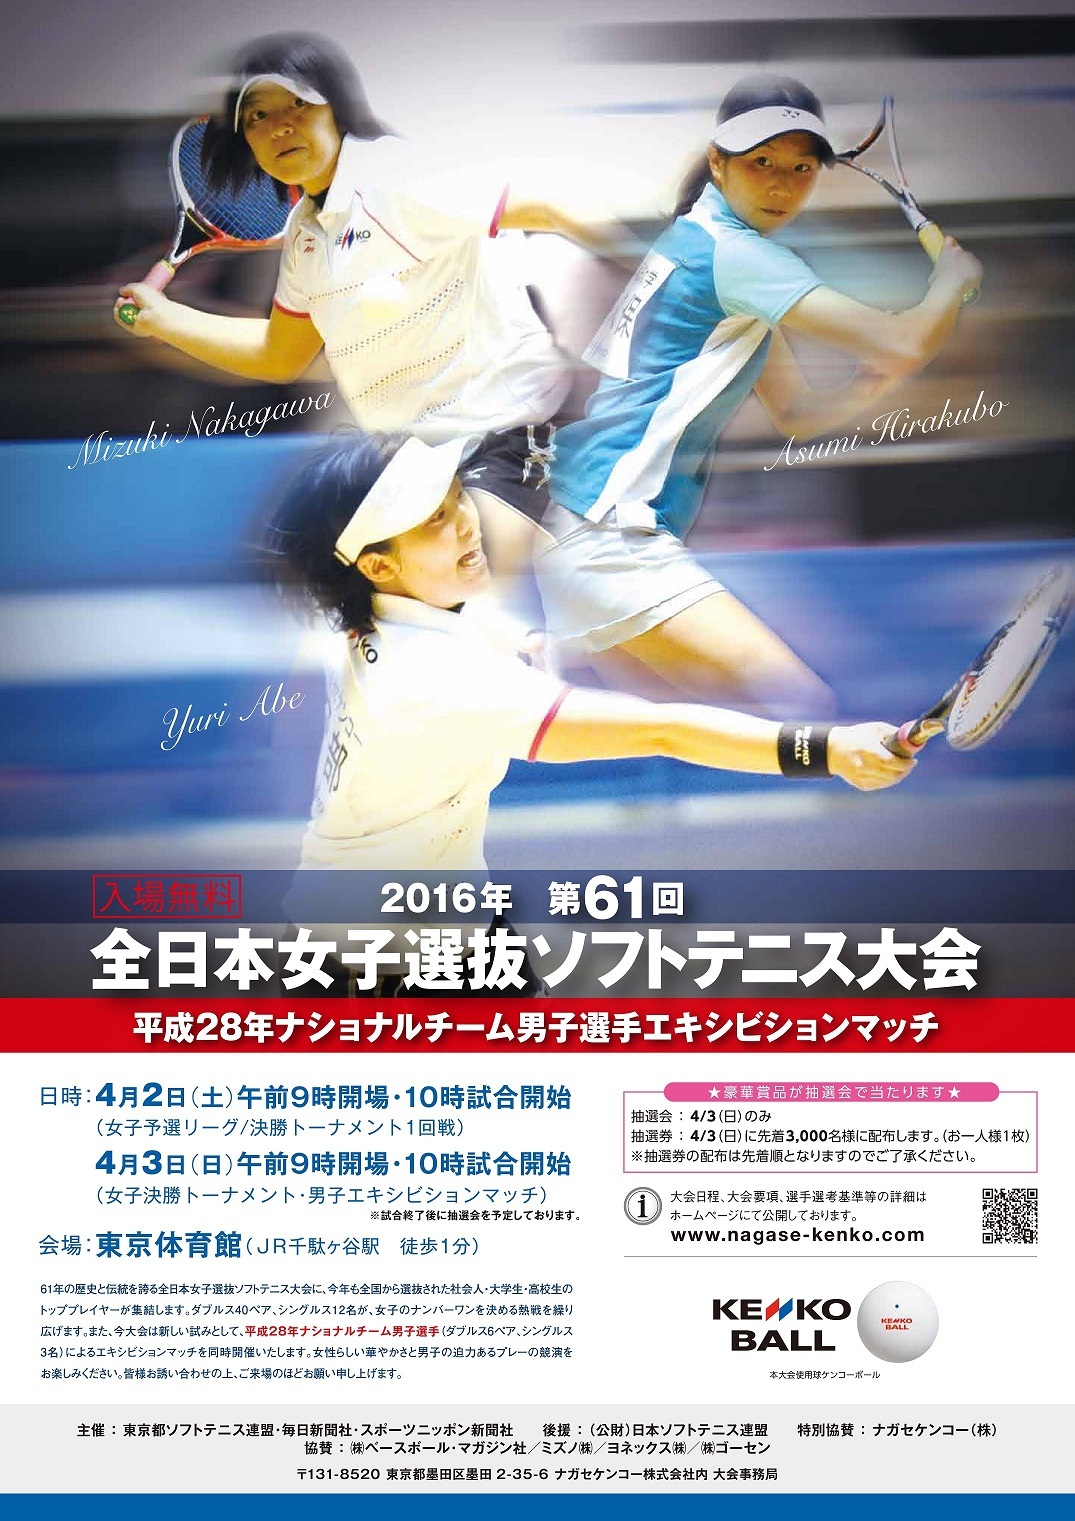 第61回全日本女子選抜ソフトテニス大会、ナショナルチーム男子選手エキシビションマッチの開催お知らせ